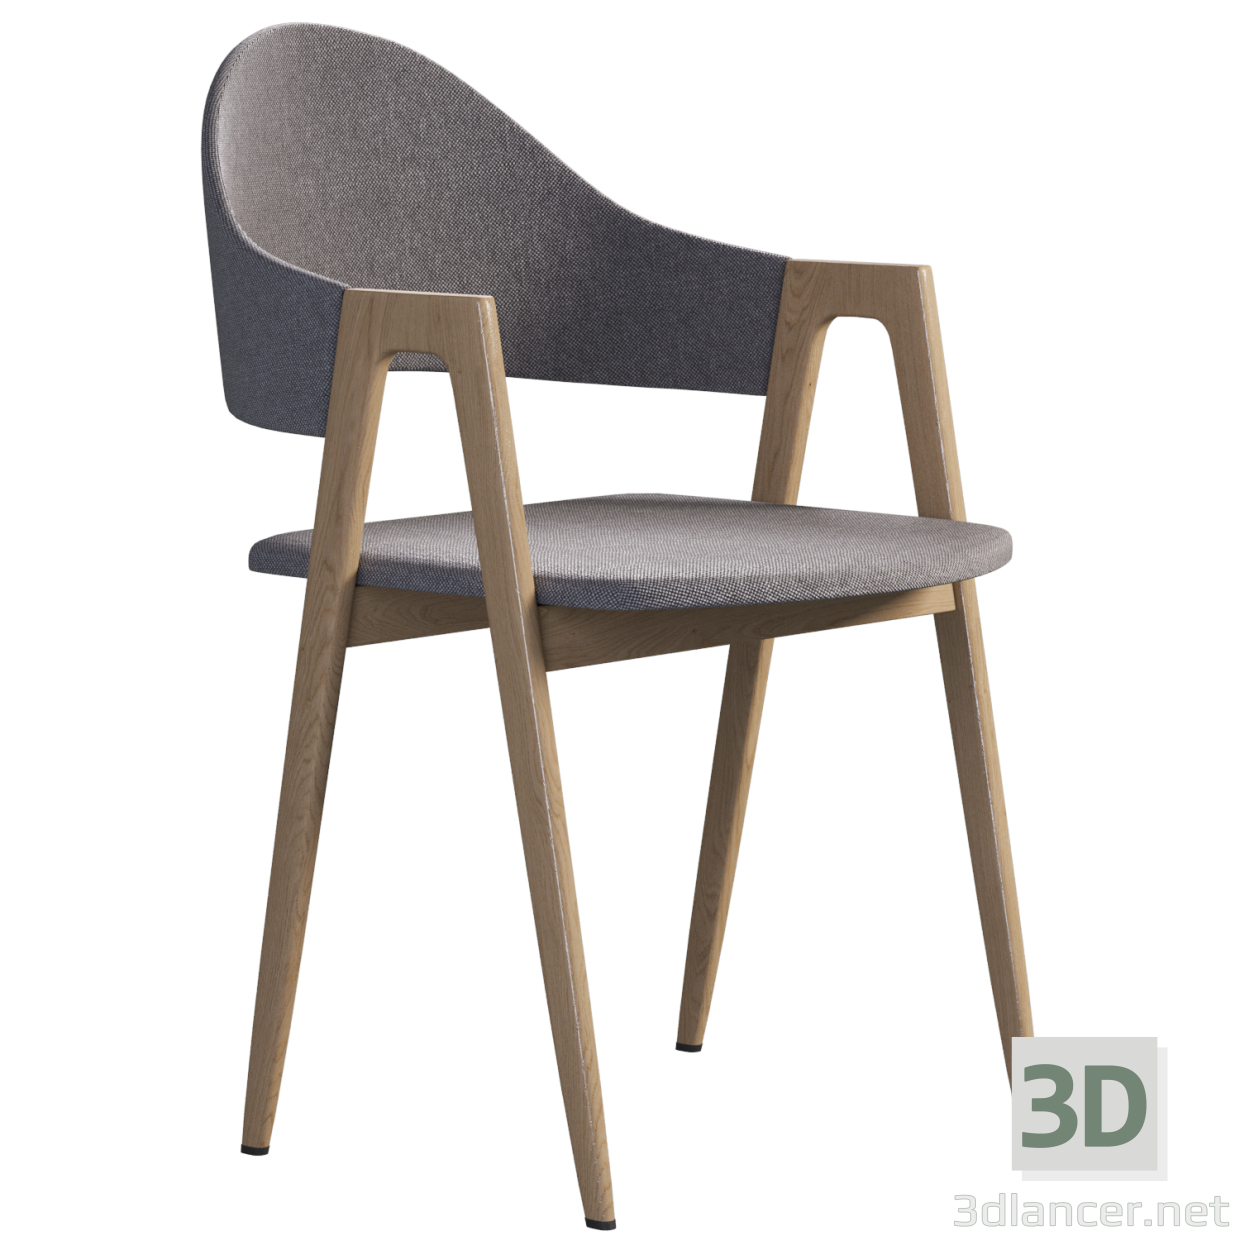 3 डी रसोई की कुर्सी हलमार K344 मॉडल खरीद - रेंडर